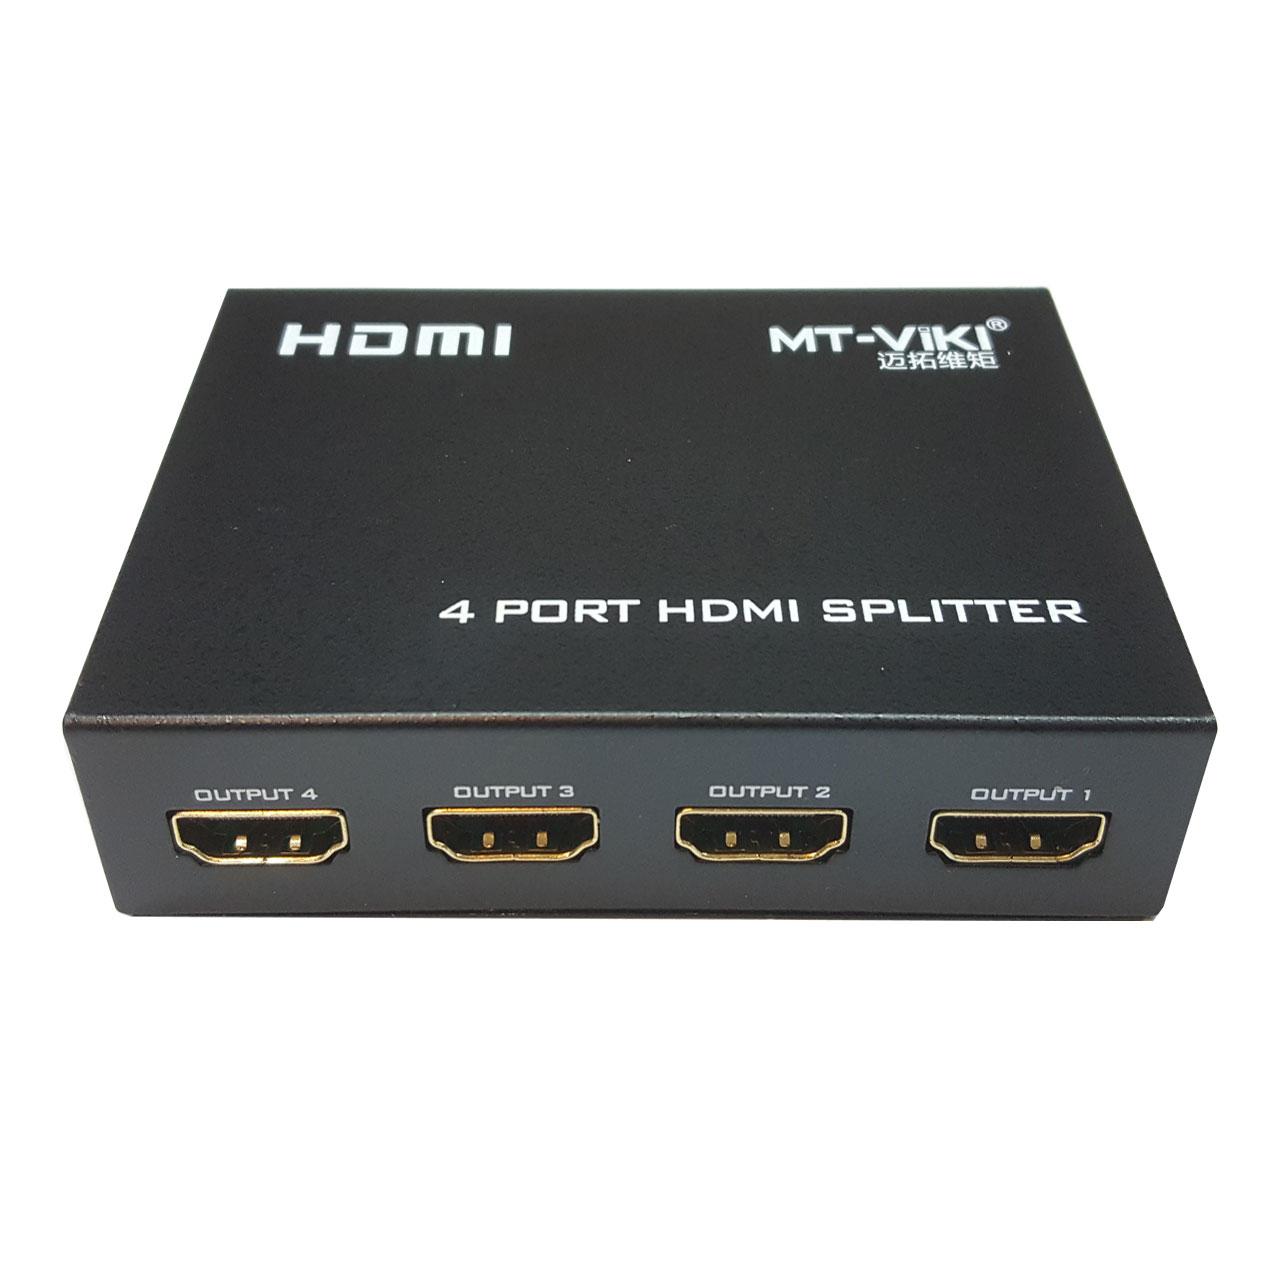 اسپلیتر 1 به 4 HDMI ام تی ویکی مدل MT-SP104M